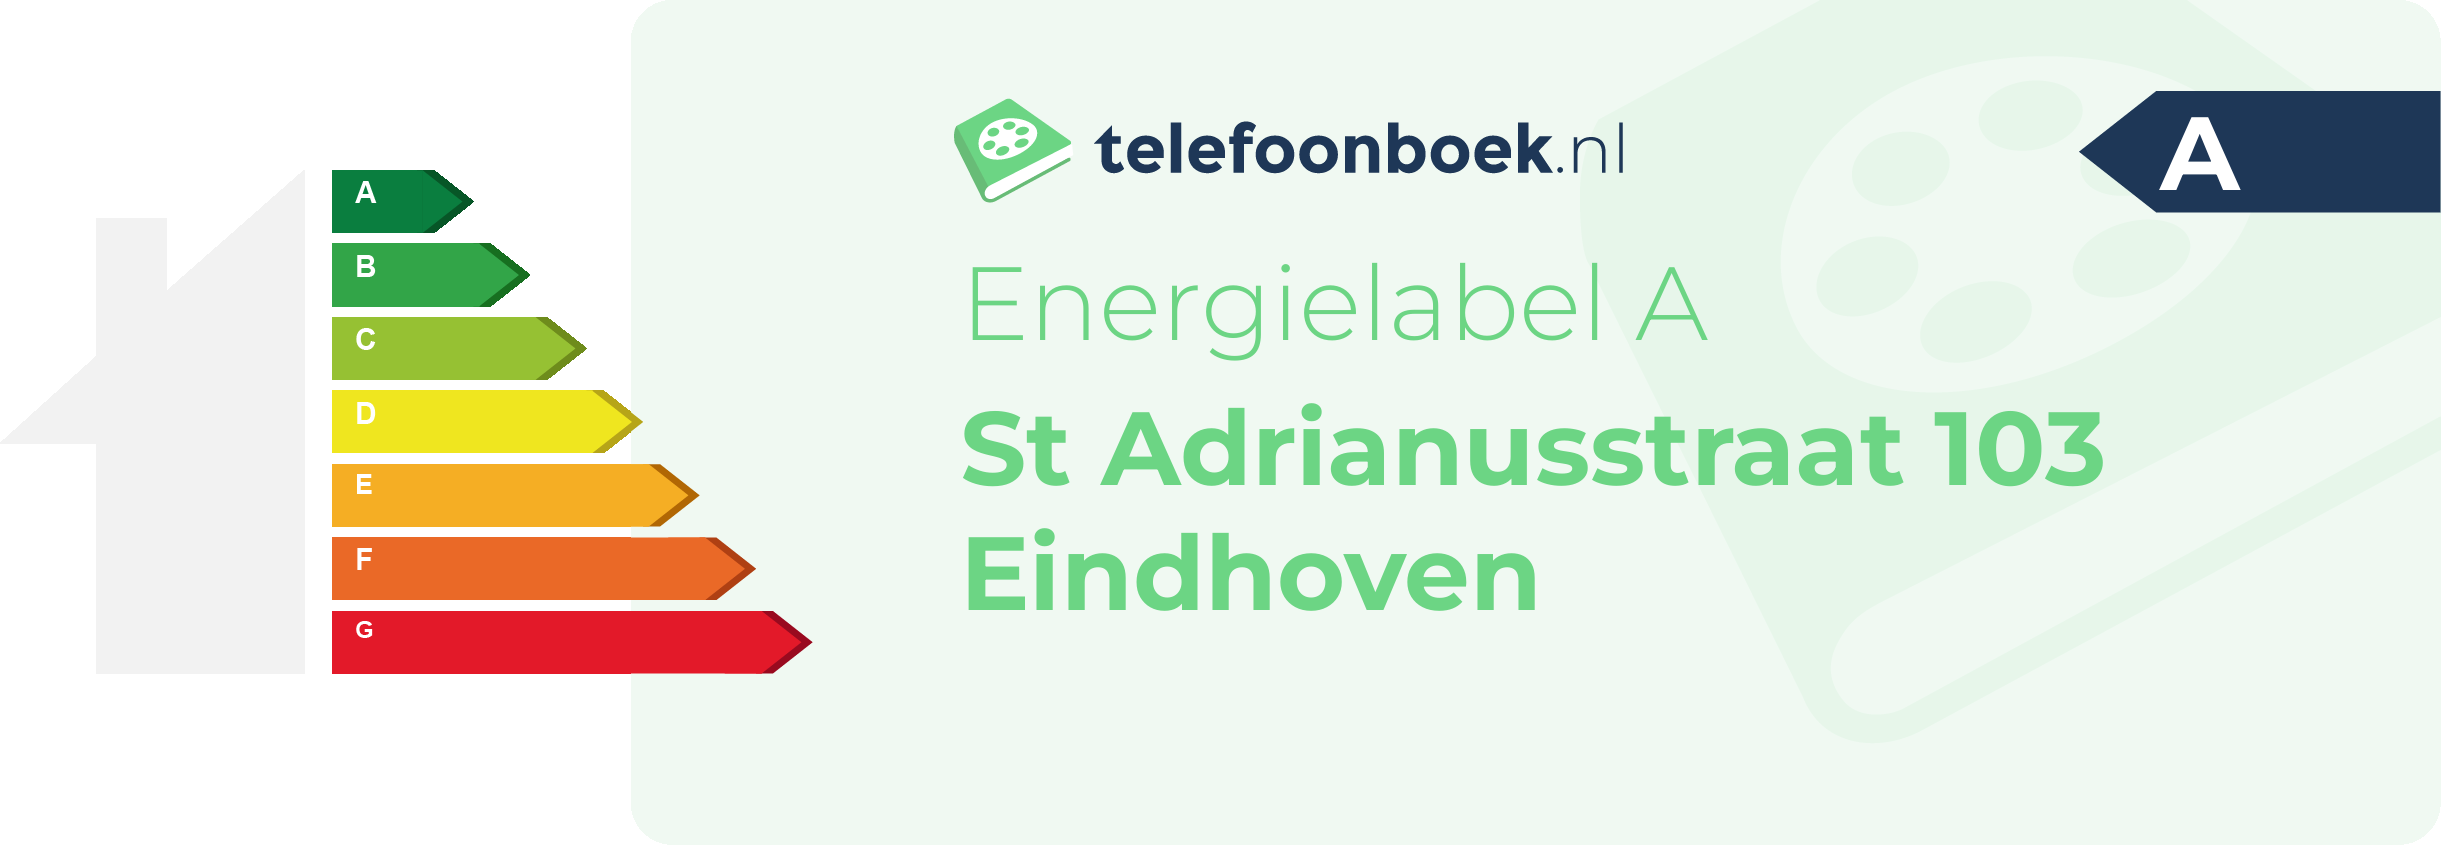 Energielabel St Adrianusstraat 103 Eindhoven